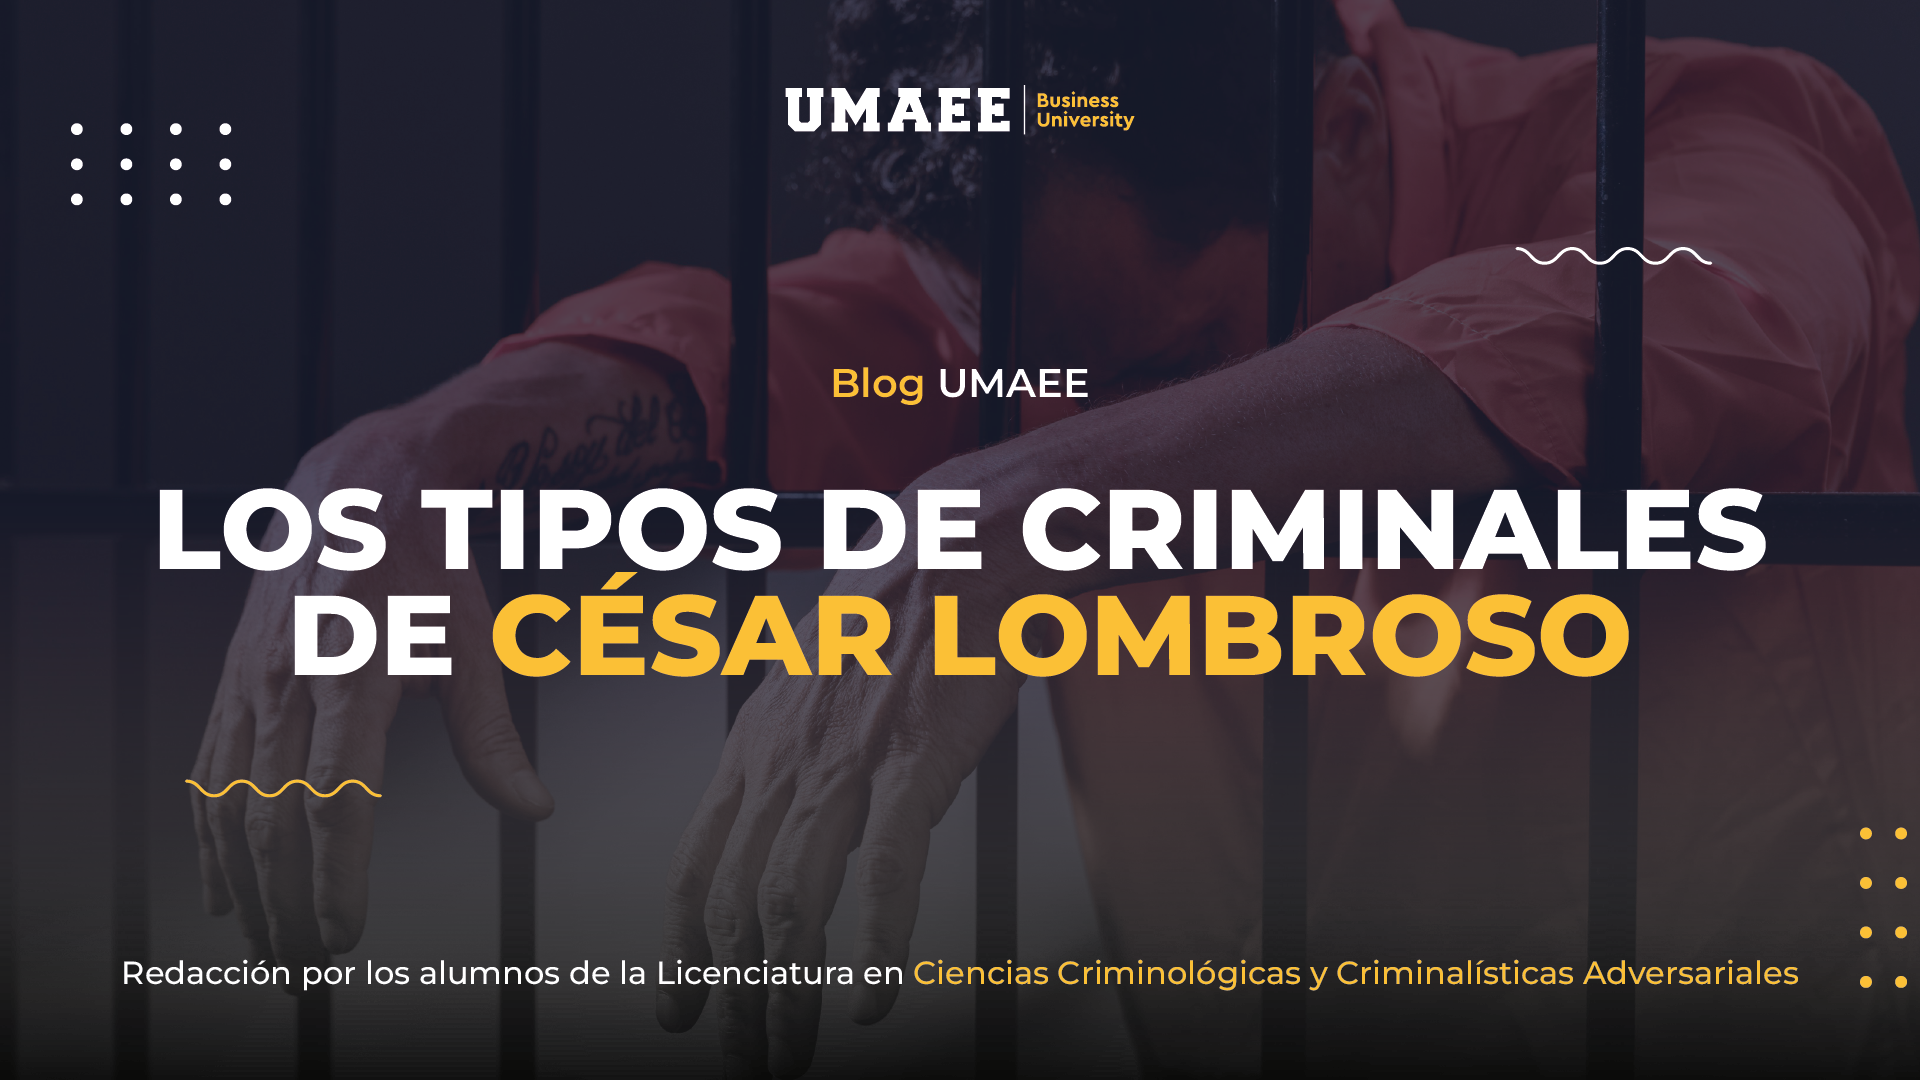 Los tipos de criminales de César Lombroso.